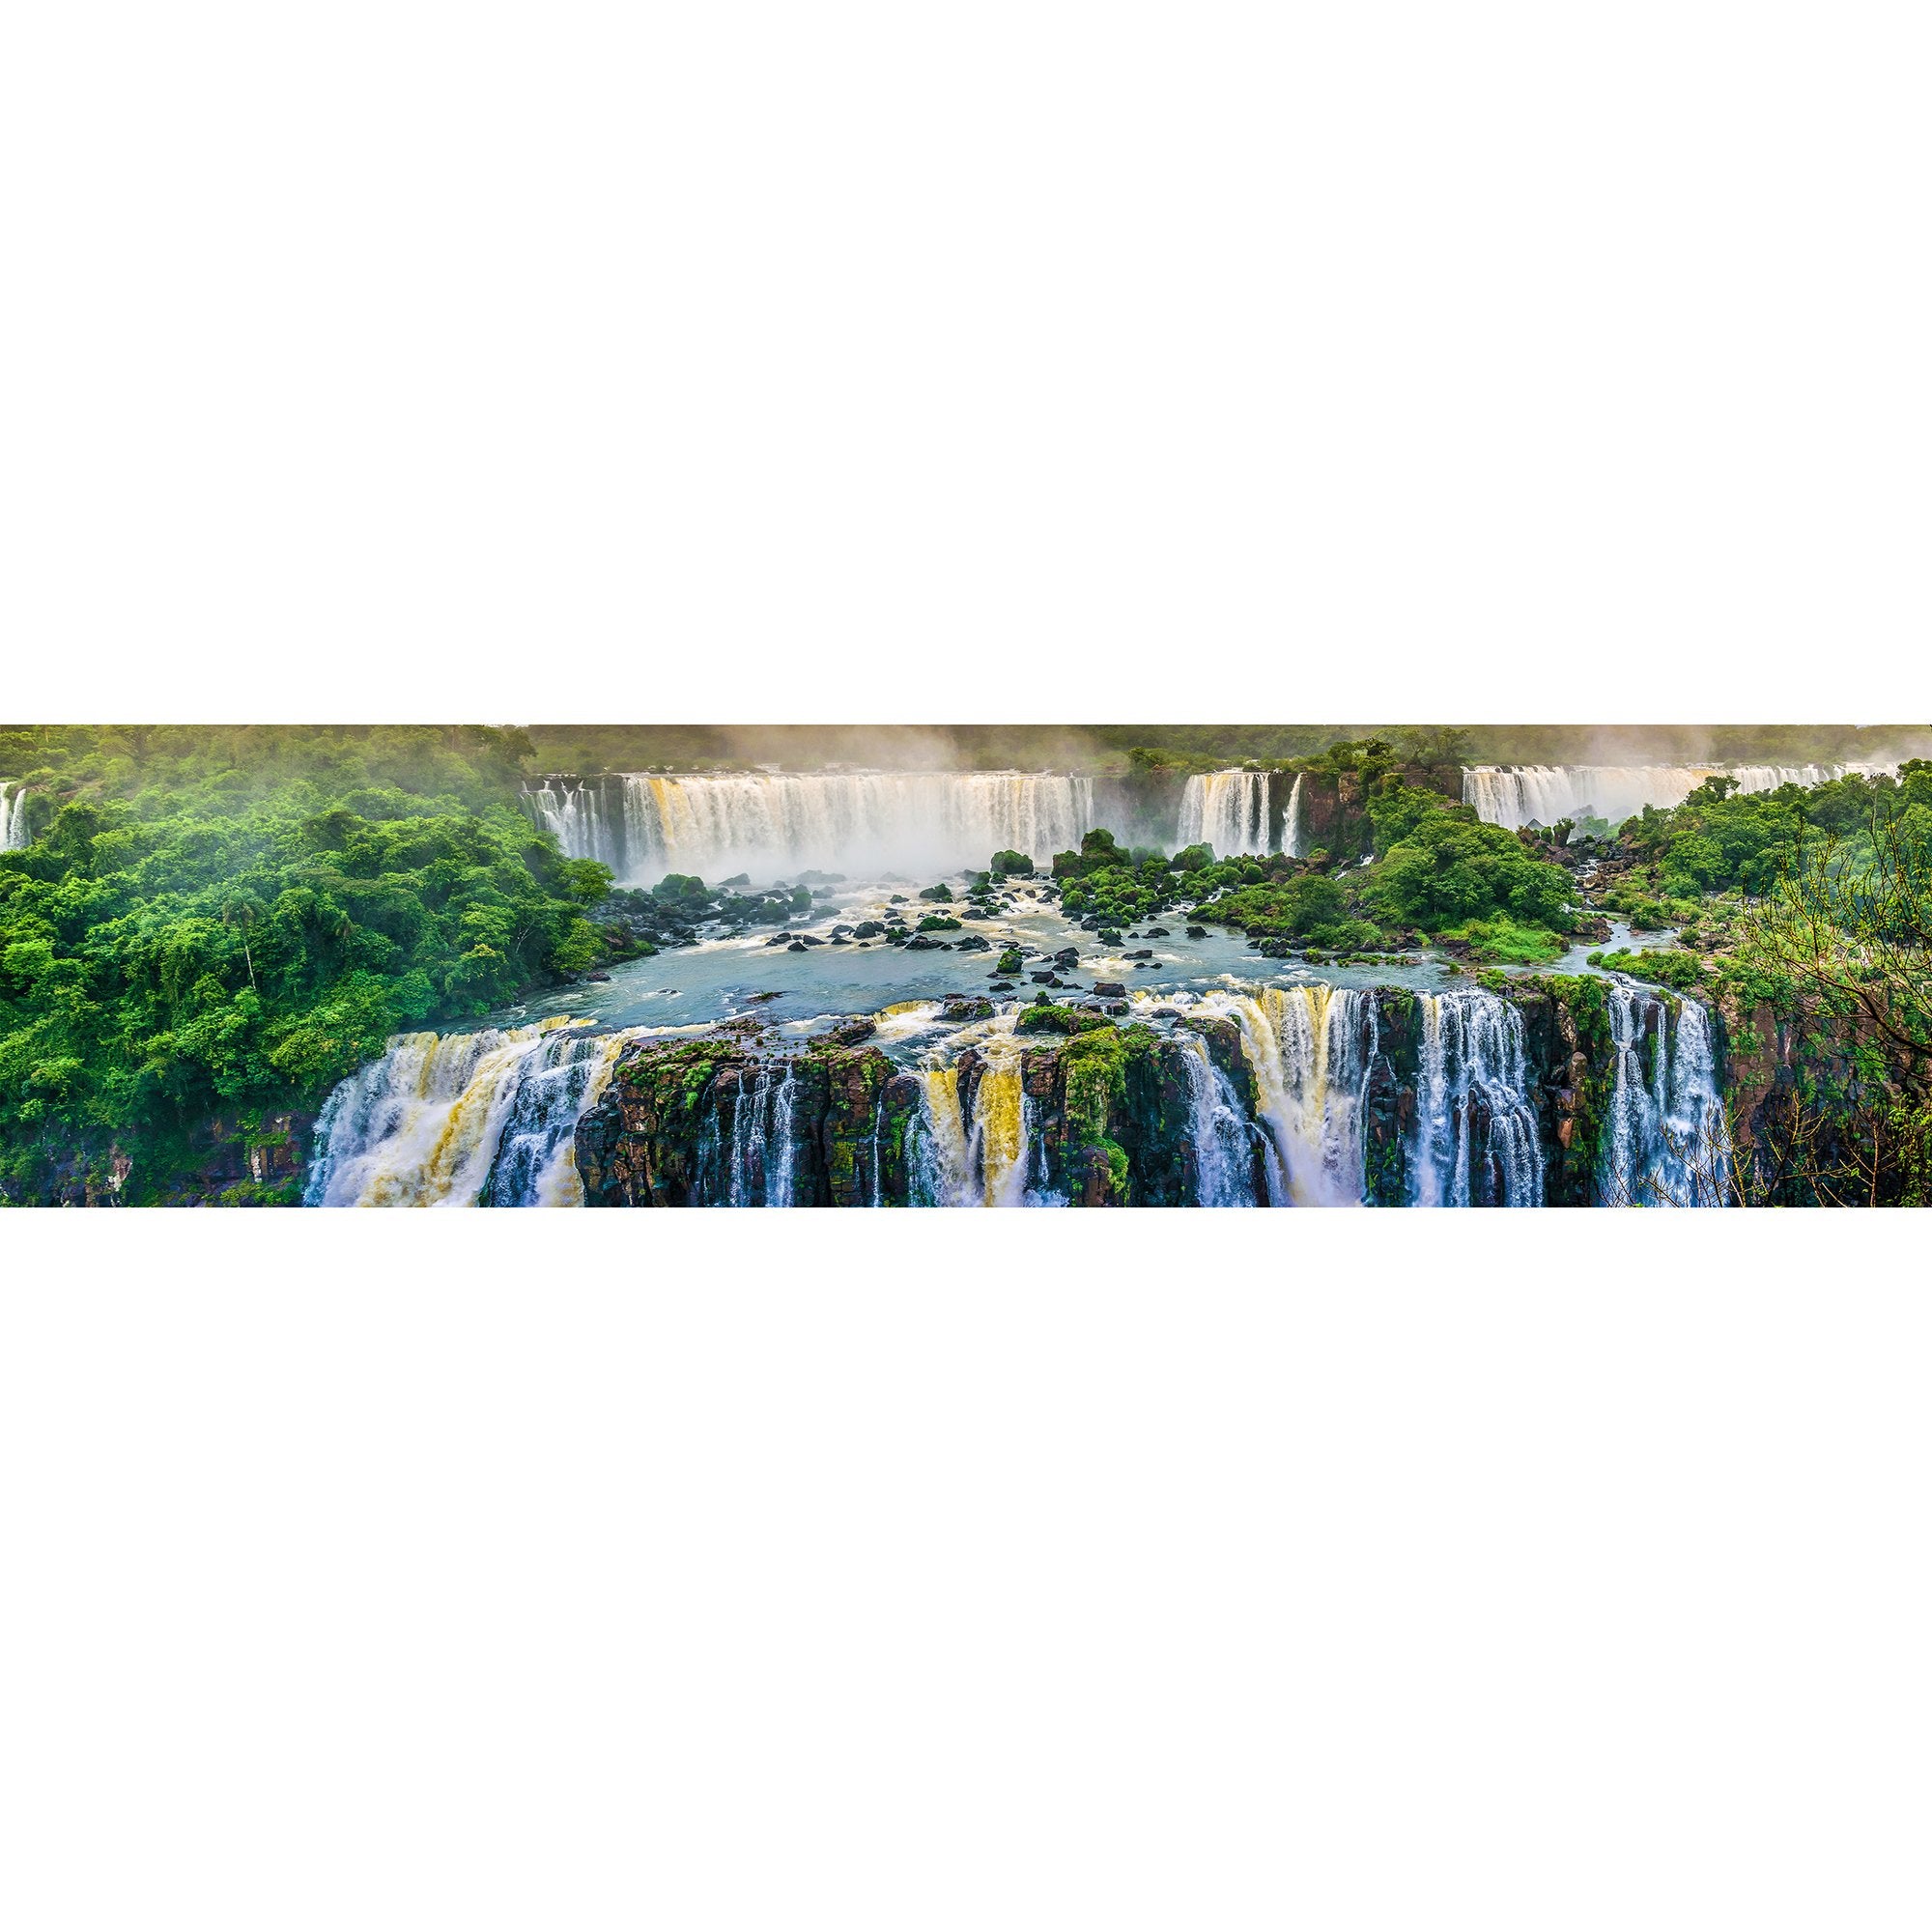 Iguazu-Wasserfaelle